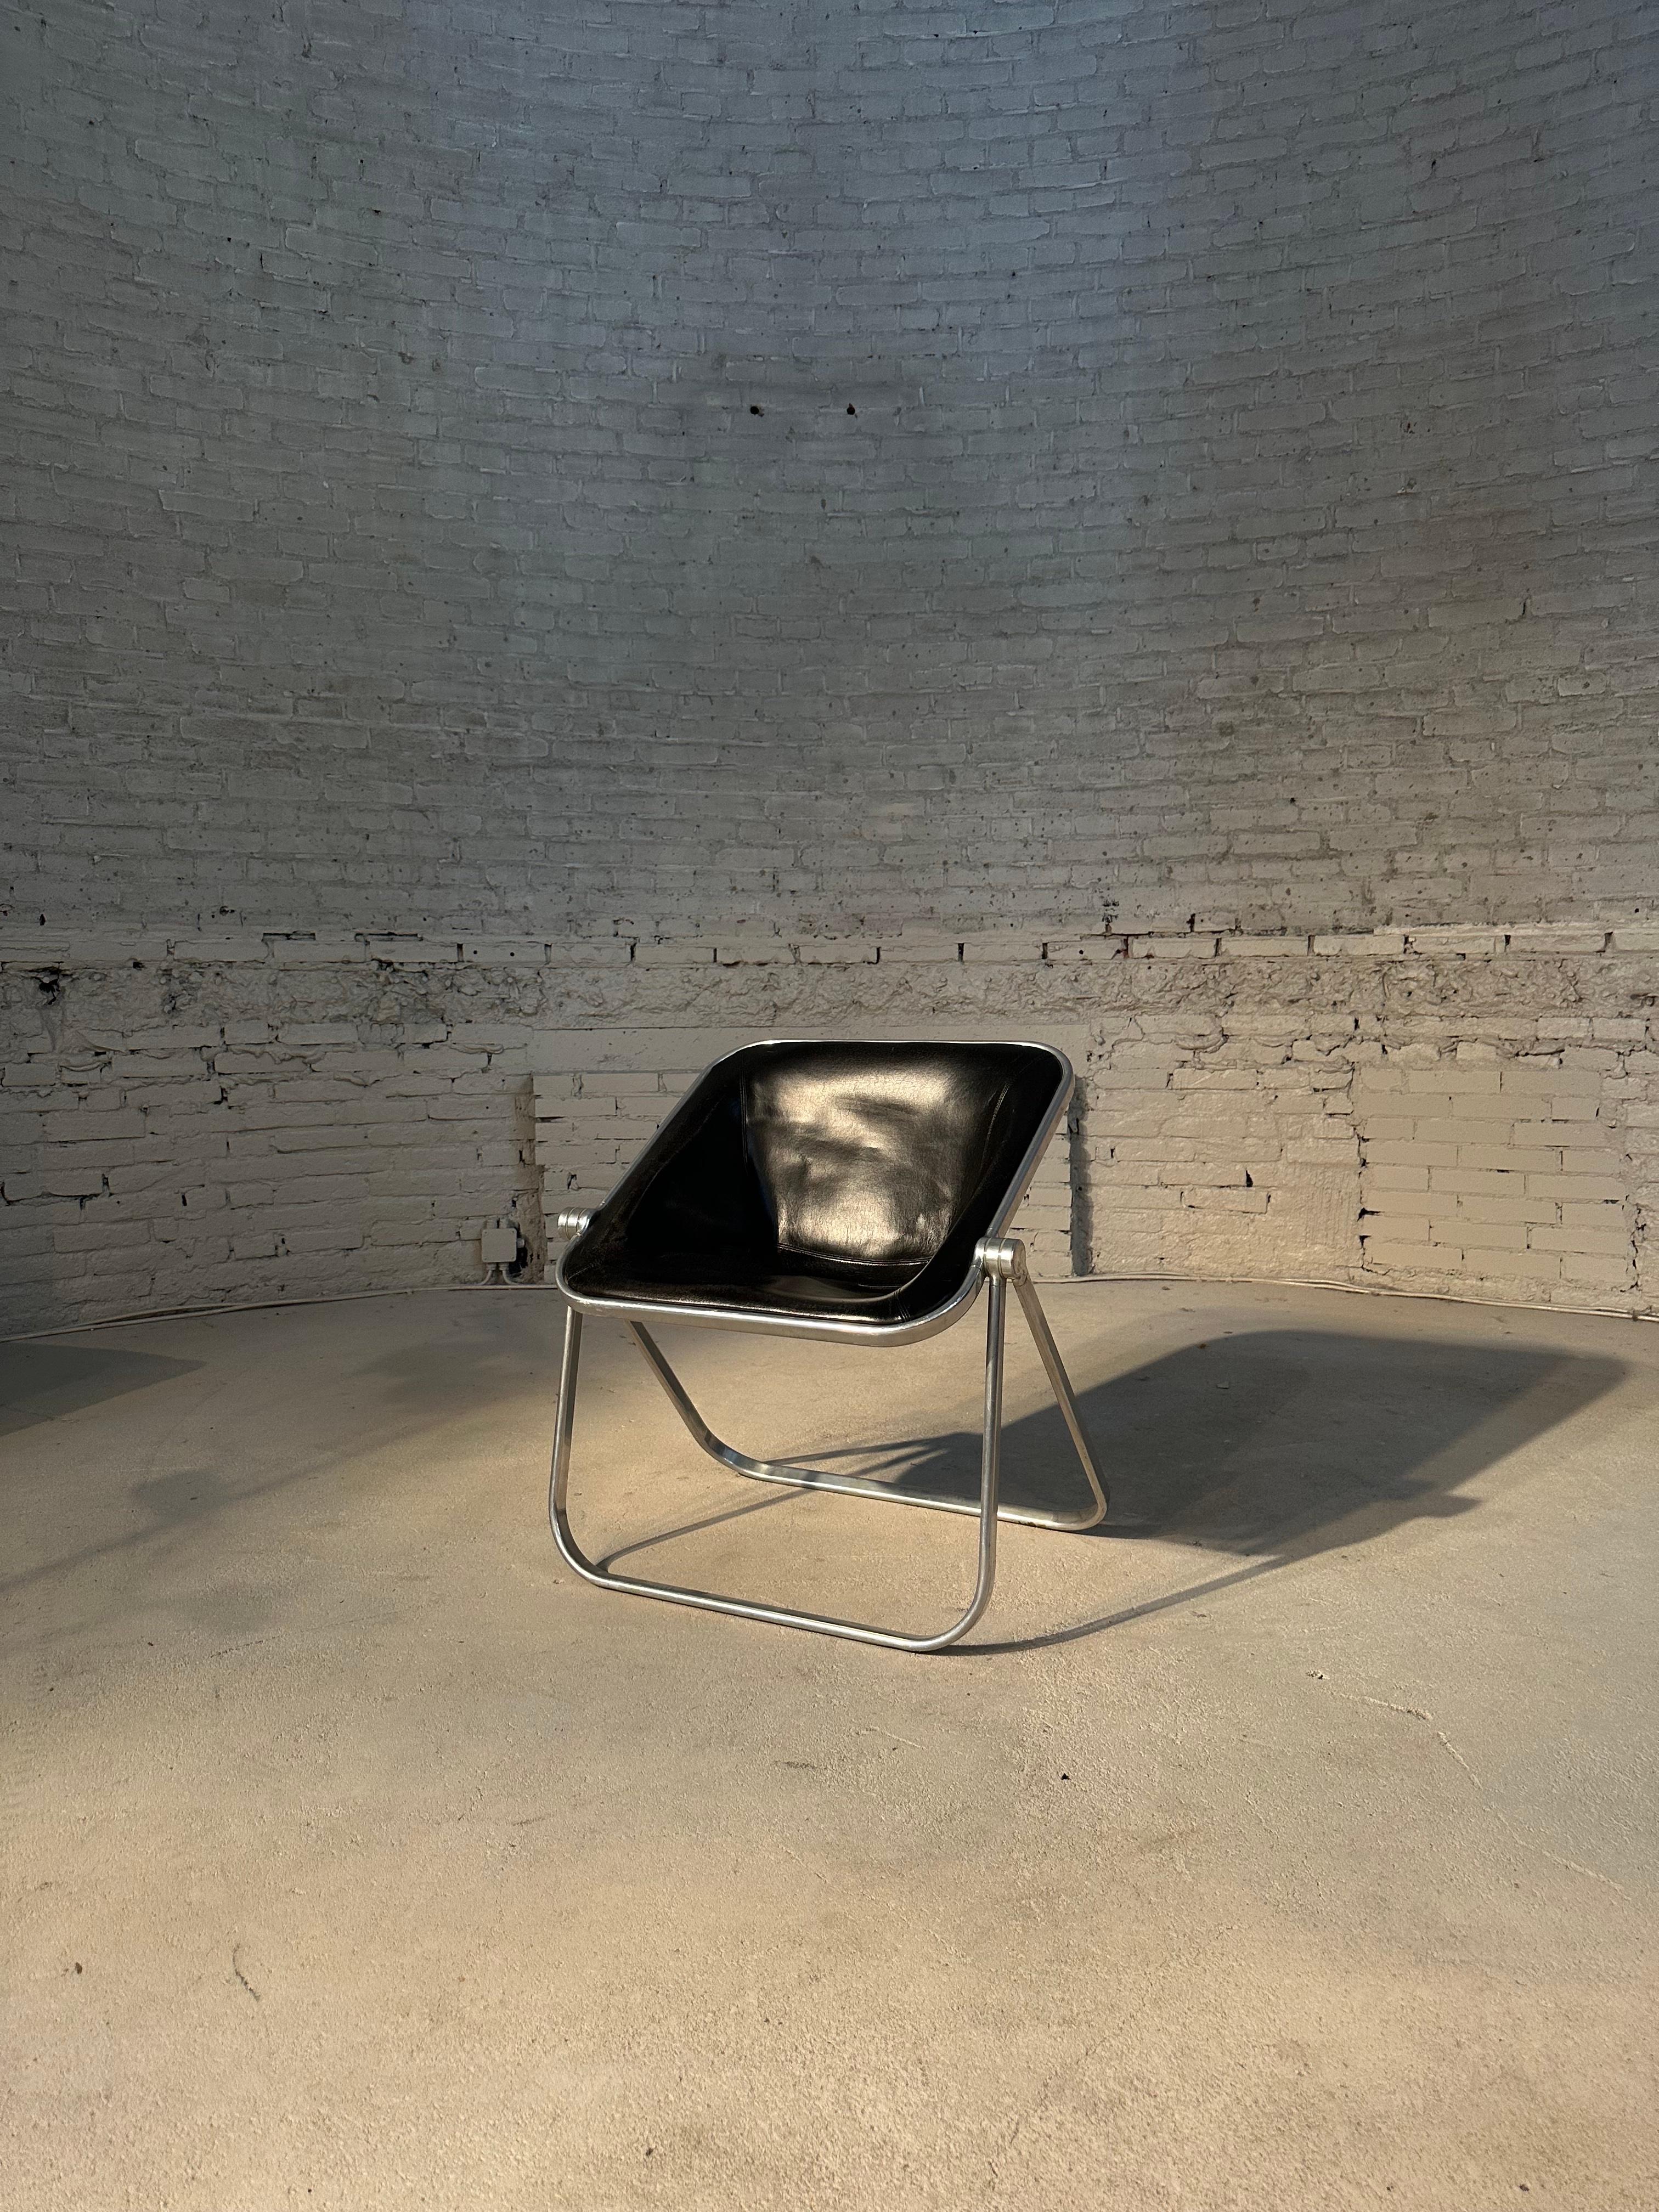 Plona wurde 1970 von Giancarlo Piretti entworfen und ist ein klappbarer und stapelbarer Sessel. Dank seines einzigartigen Designs vereint er Ästhetik, Funktionalität und Komfort. Die solide Rohrstruktur besteht aus einer polierten, rostfreien